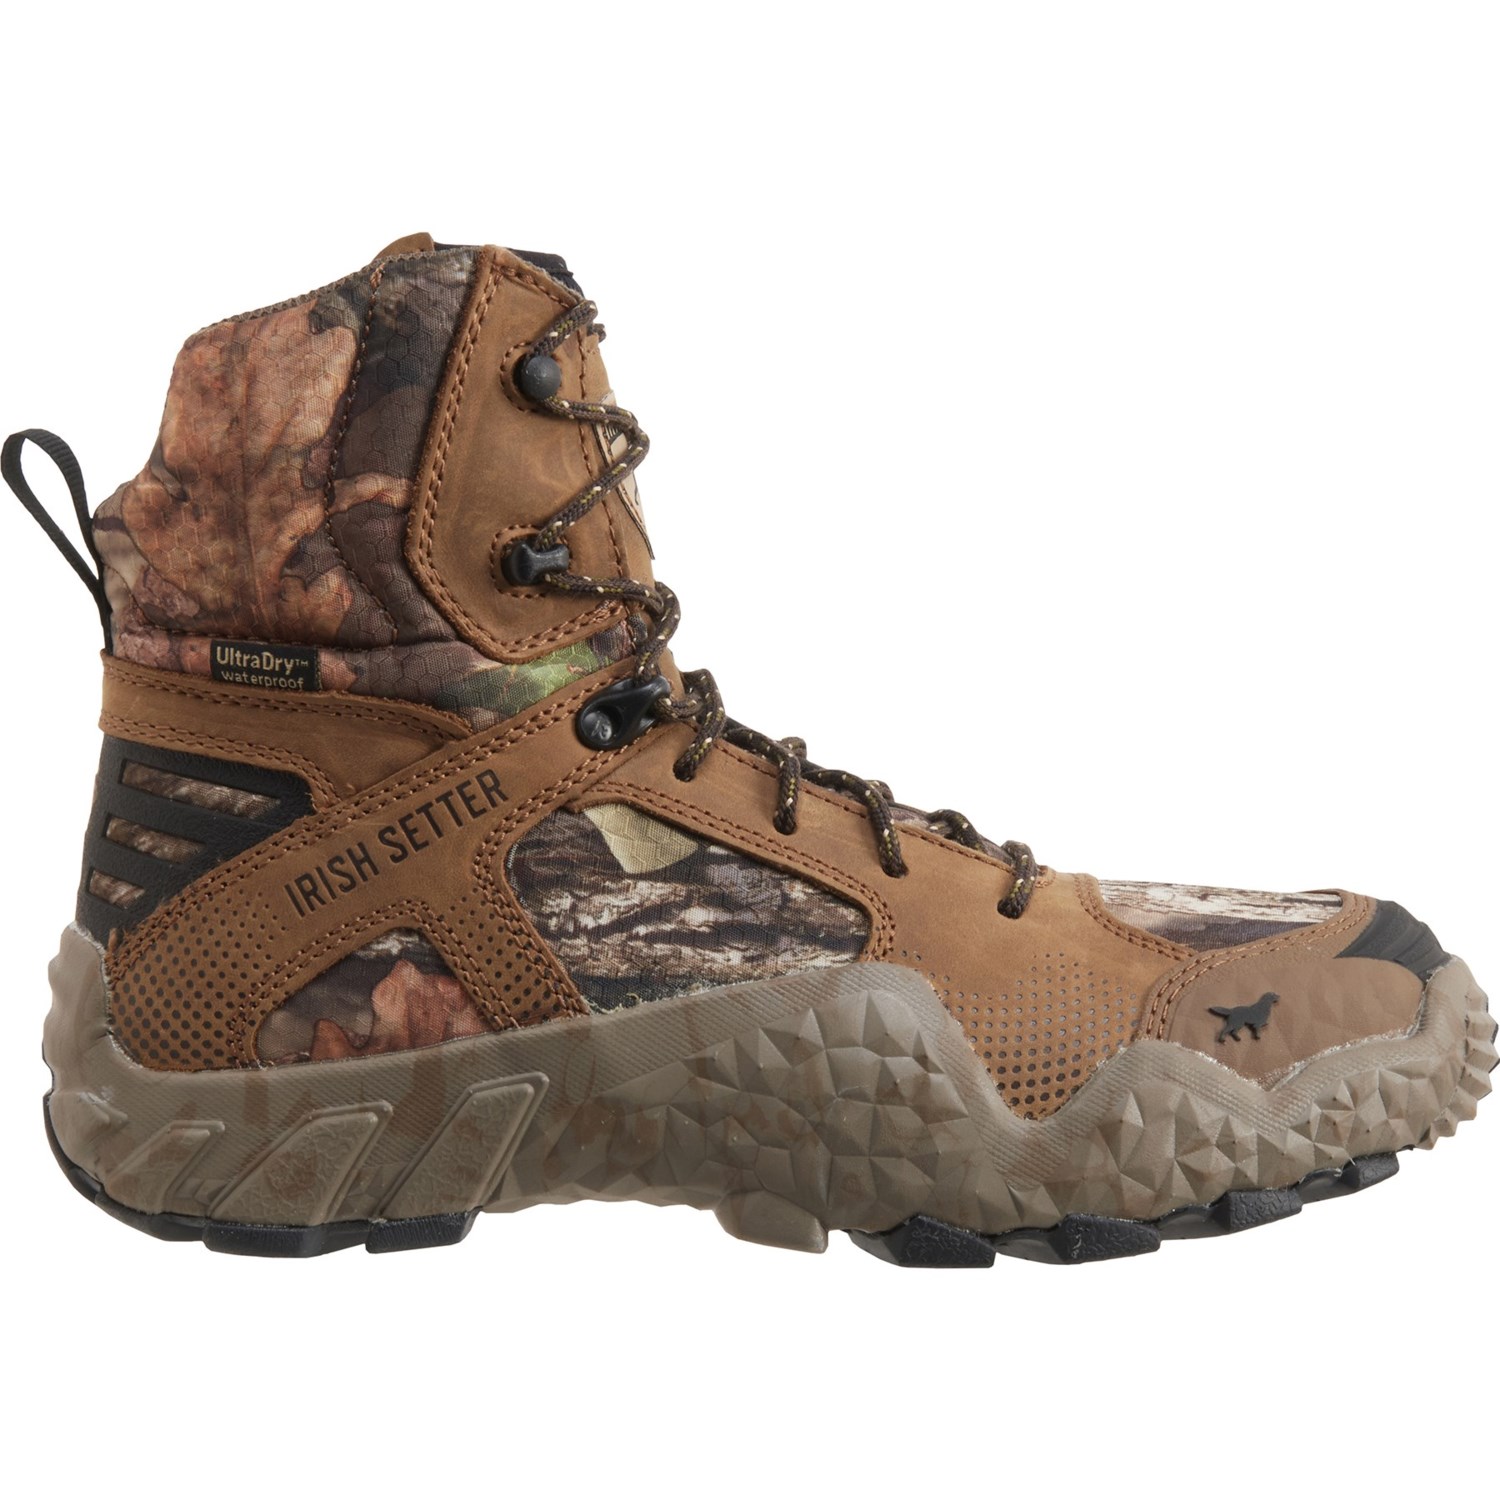 Irish Setter VaprTrek Hunting Boots (For Men) - Save 62%